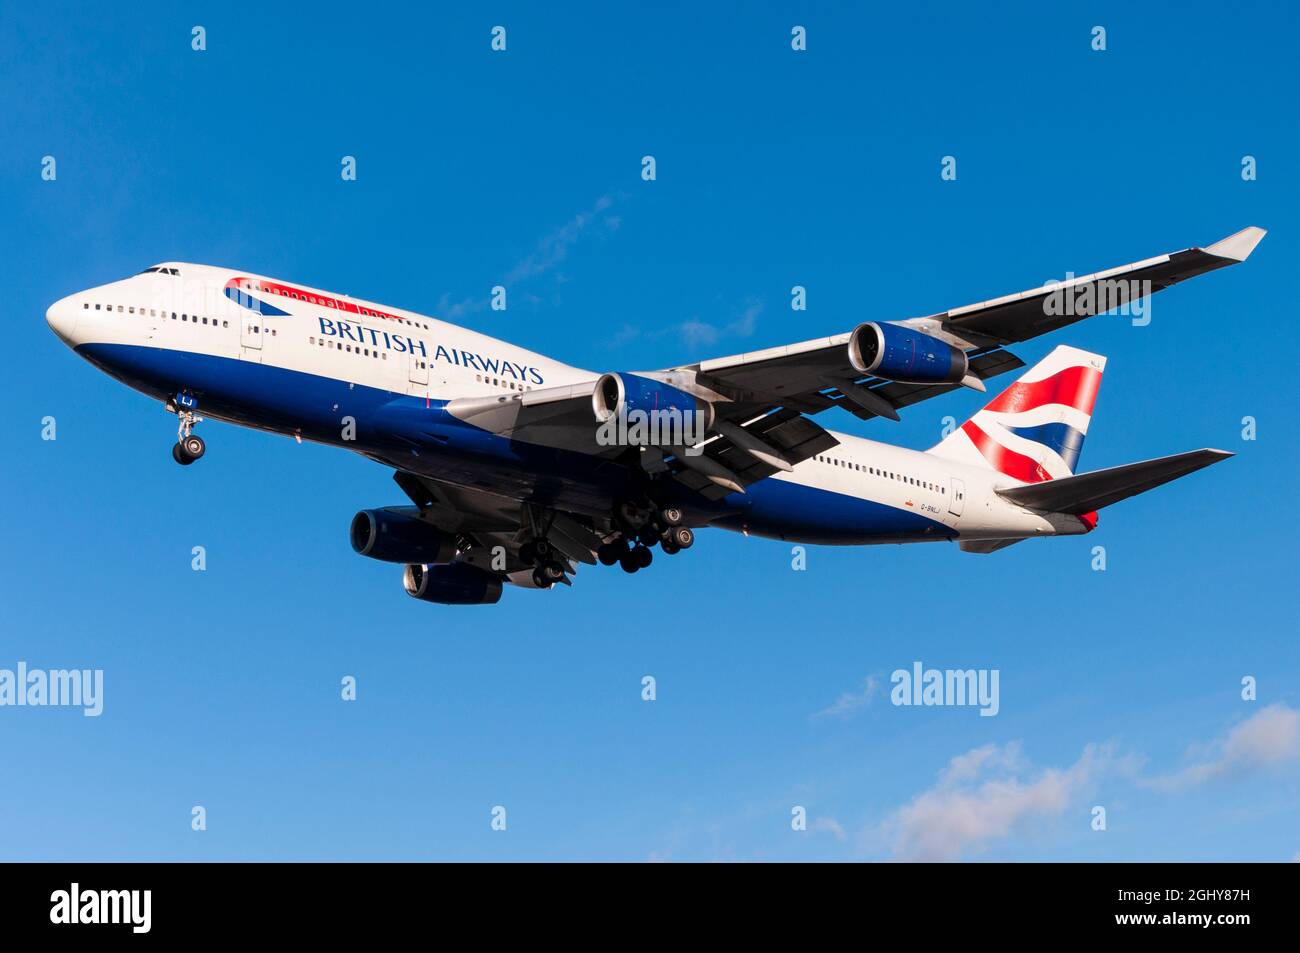 British Airways Boeing 747 Jumbo jet Airliner aereo G-BLNJ in finale per atterrare all'aeroporto di Londra Heathrow, Regno Unito, in cielo blu. Foto Stock